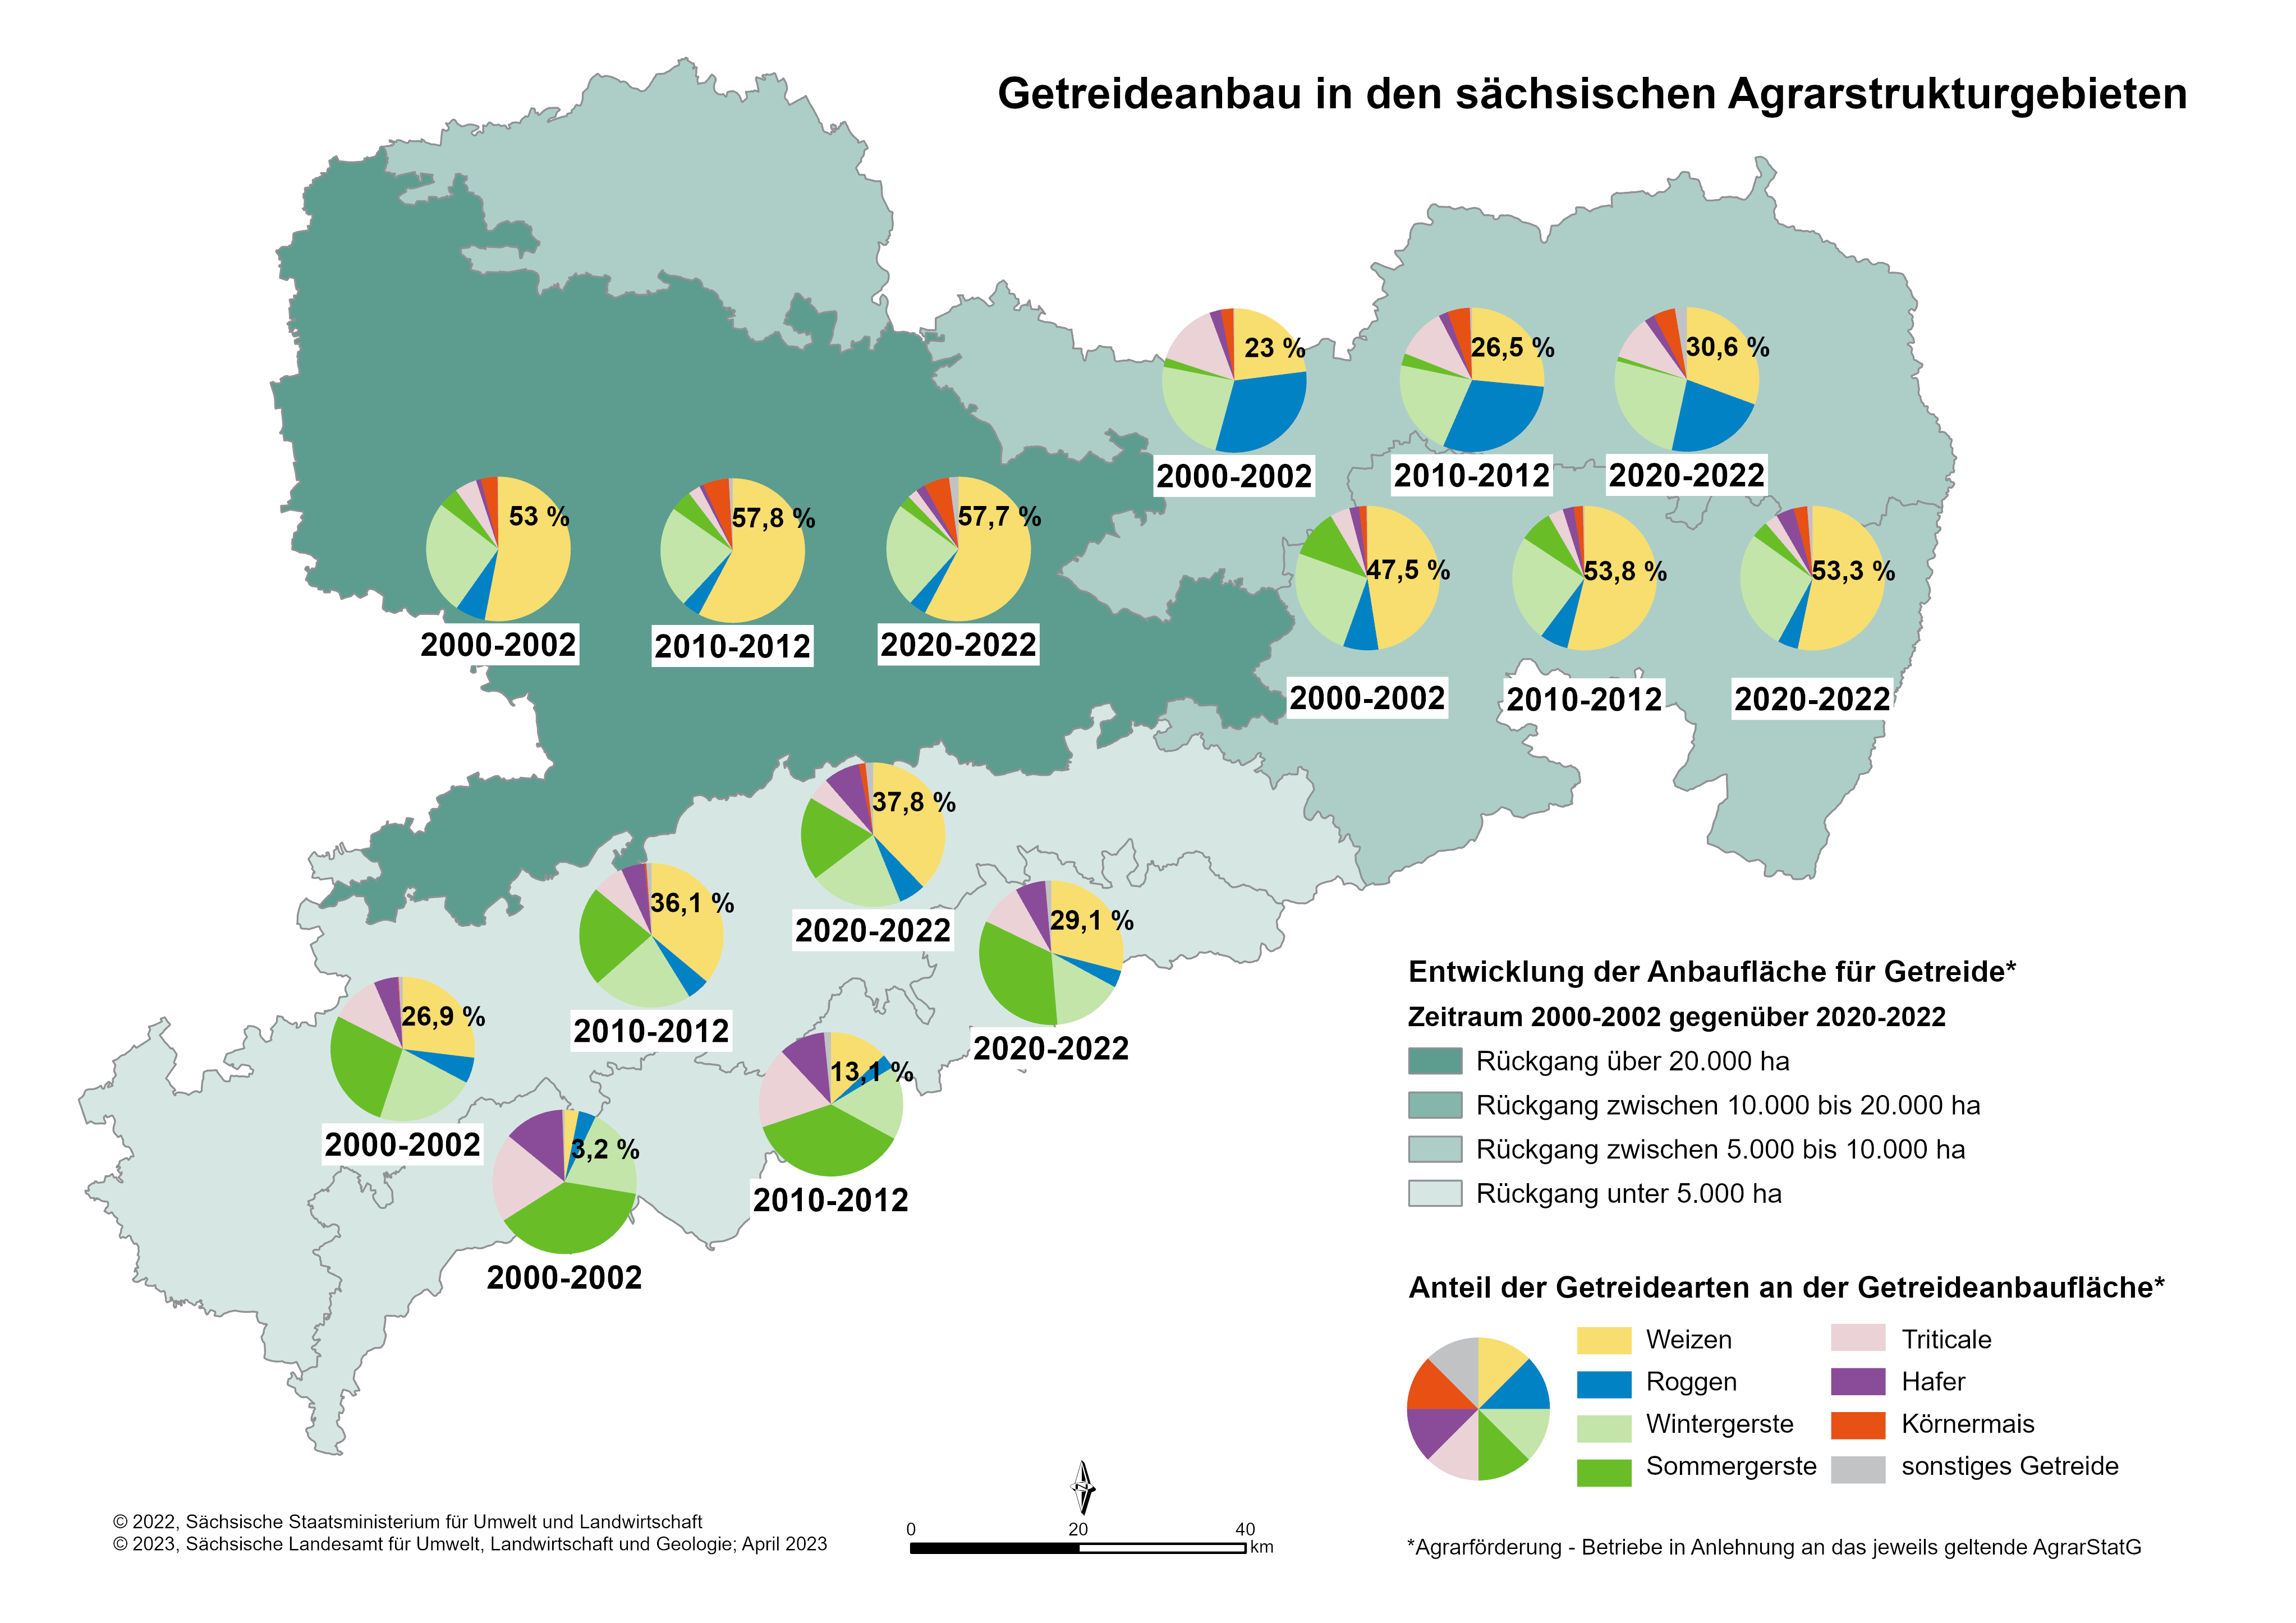 Seit 1996 ist der Getreideanbau überall in Sachsen rückläufig. Ebenso veränderte sich das Anbauspektrum beim Getreide. Überall kam es zur Ausweitung des Winterweizenanbaus, alle anderen Getreidearten verloren an Fläche.